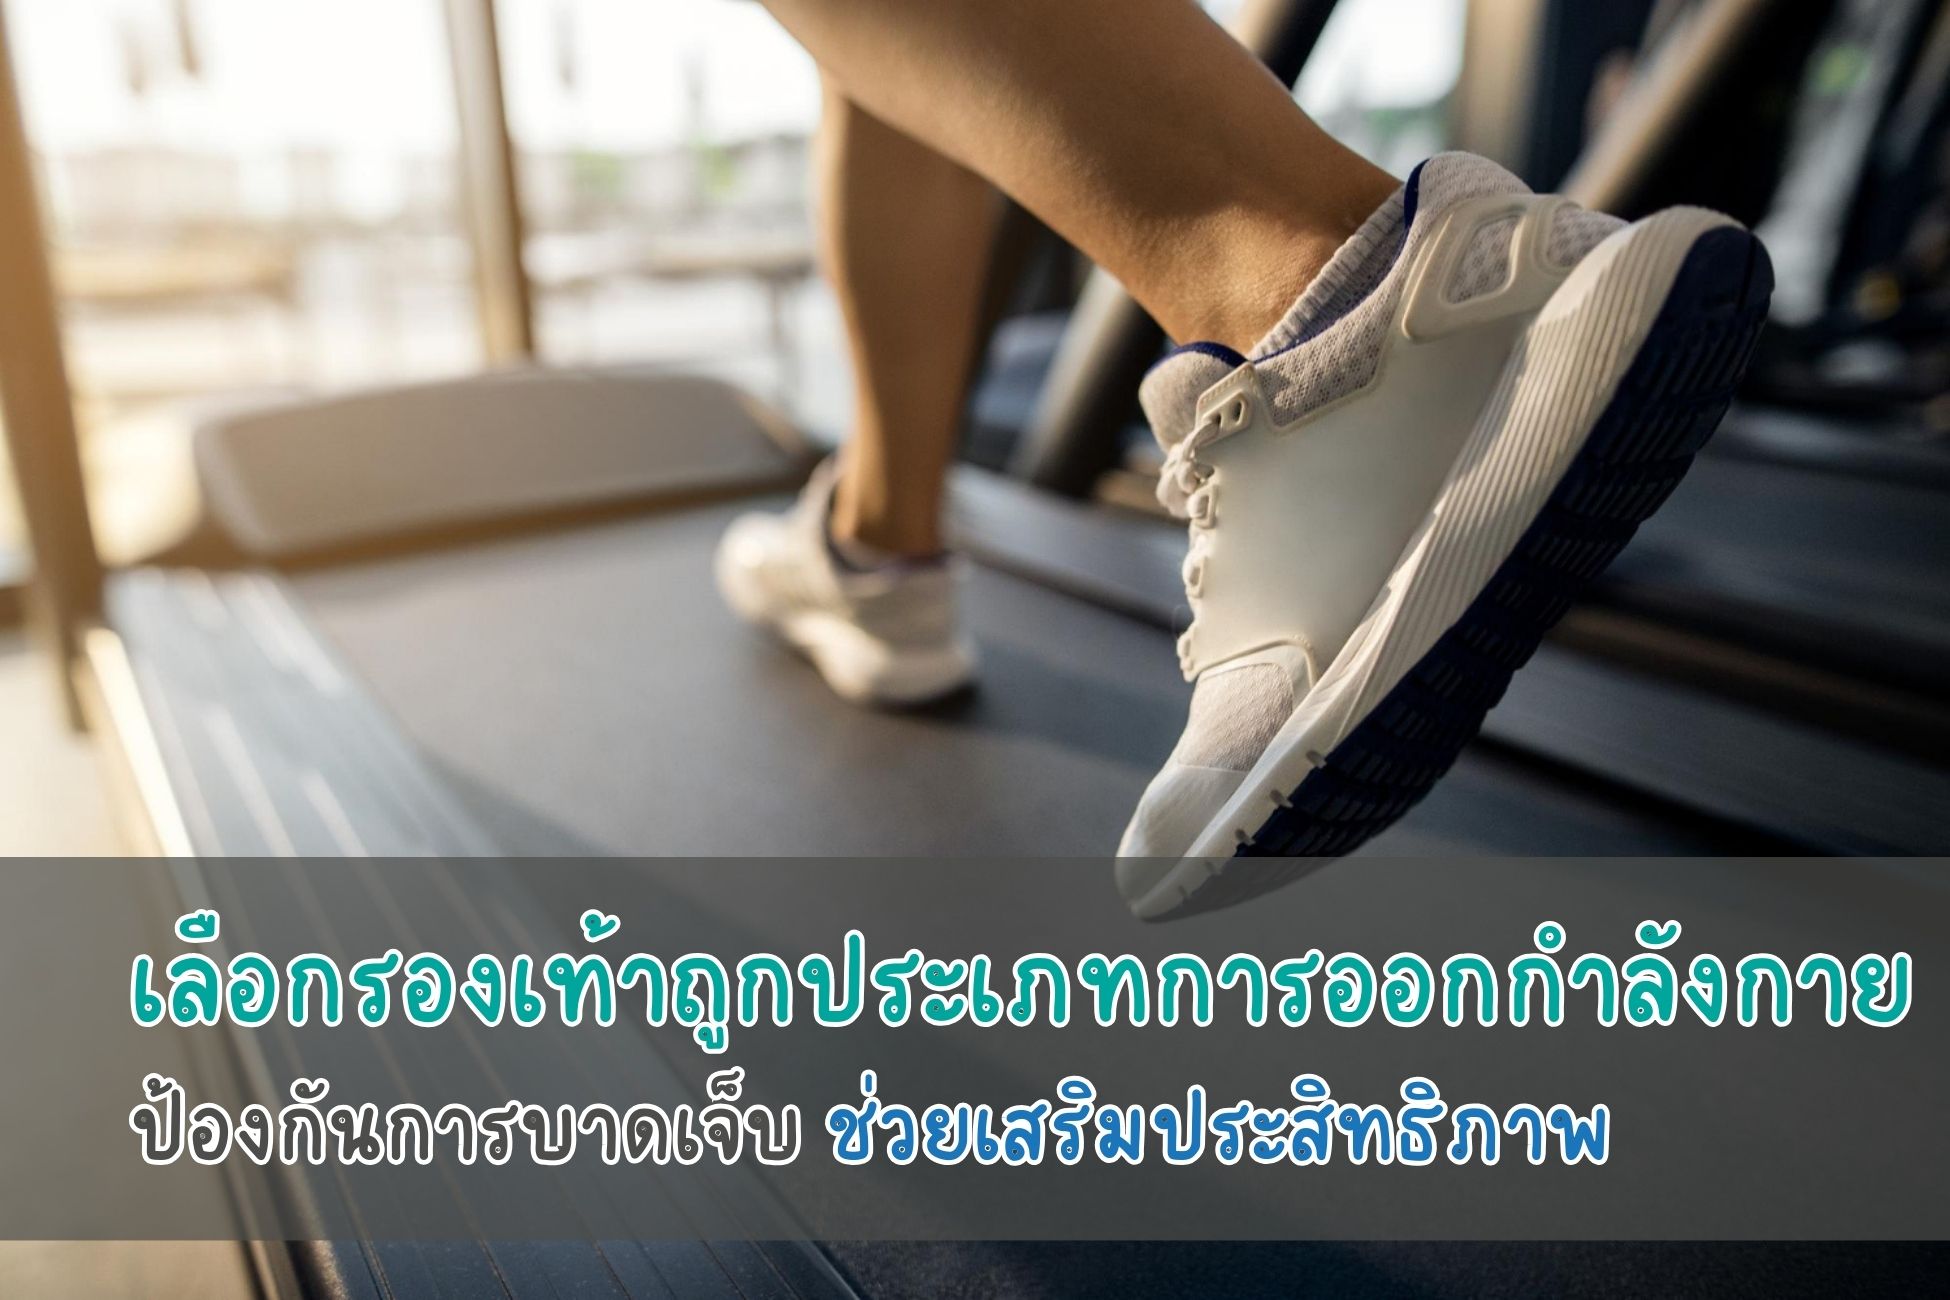 เลือกรองเท้าถูกประเภทการออกกำลังกาย ป้องกันการบาดเจ็บ ช่วยเสริมประสิทธิภาพ